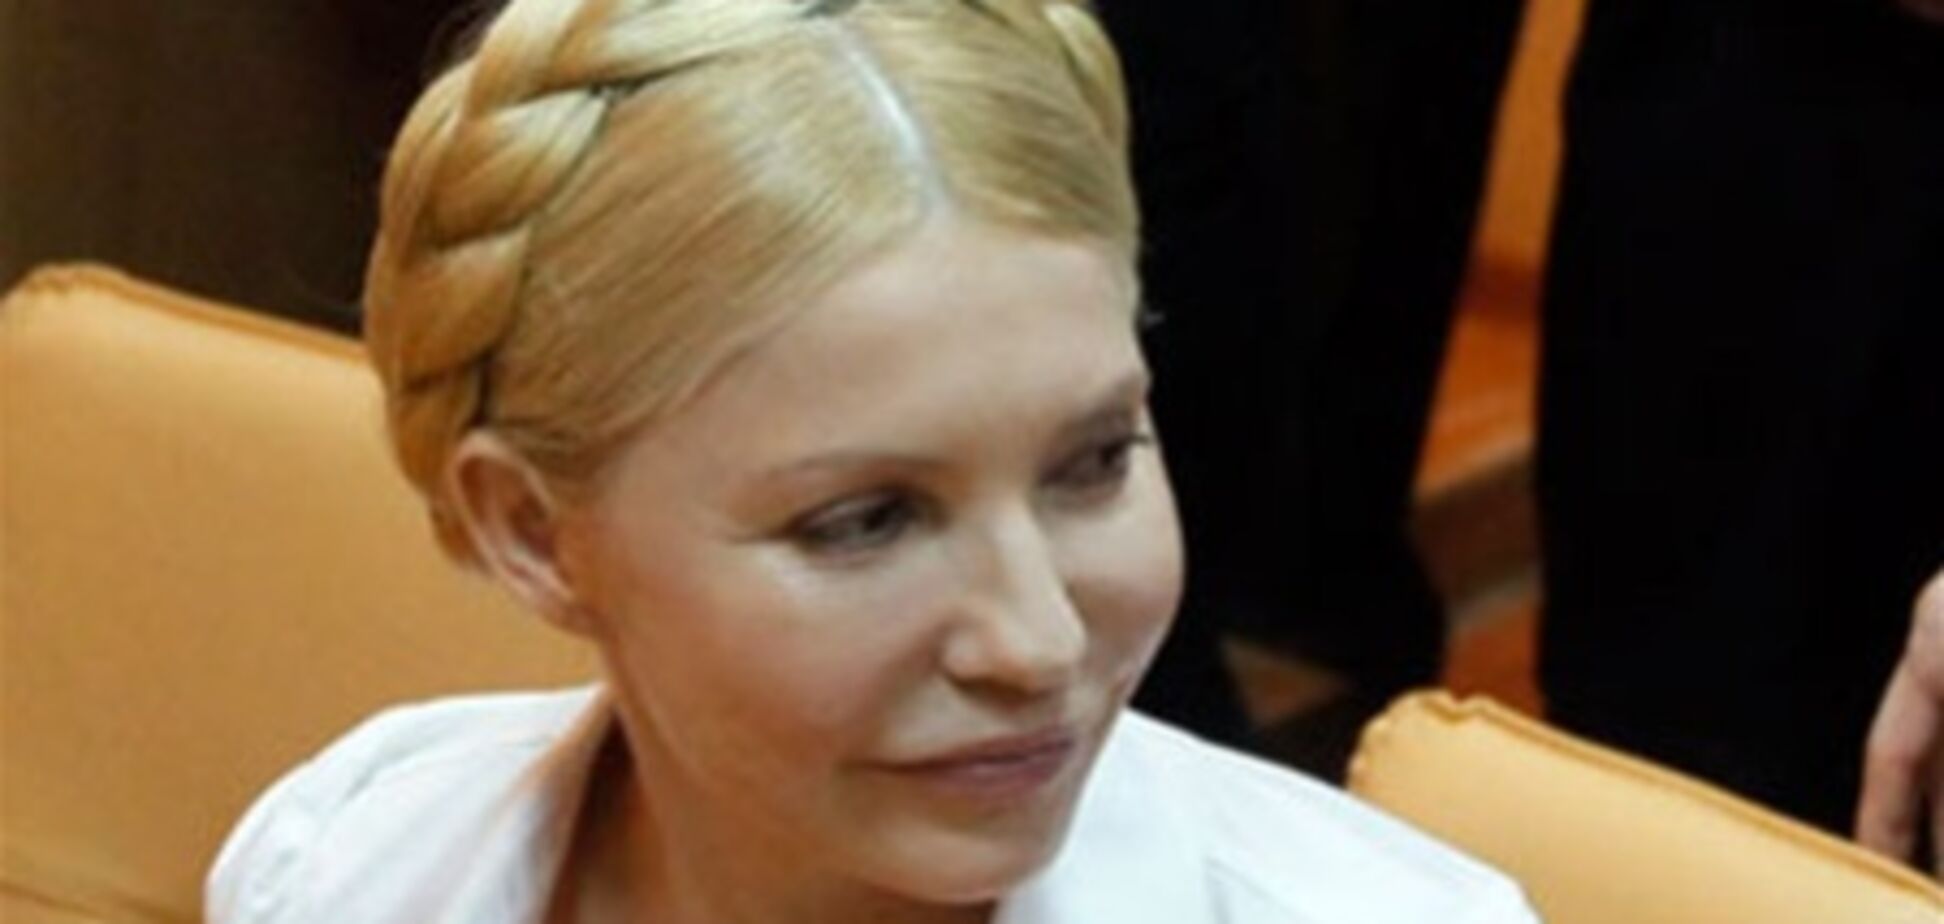 Тимошенко в колонии делают массаж и кормят 'как на убой'